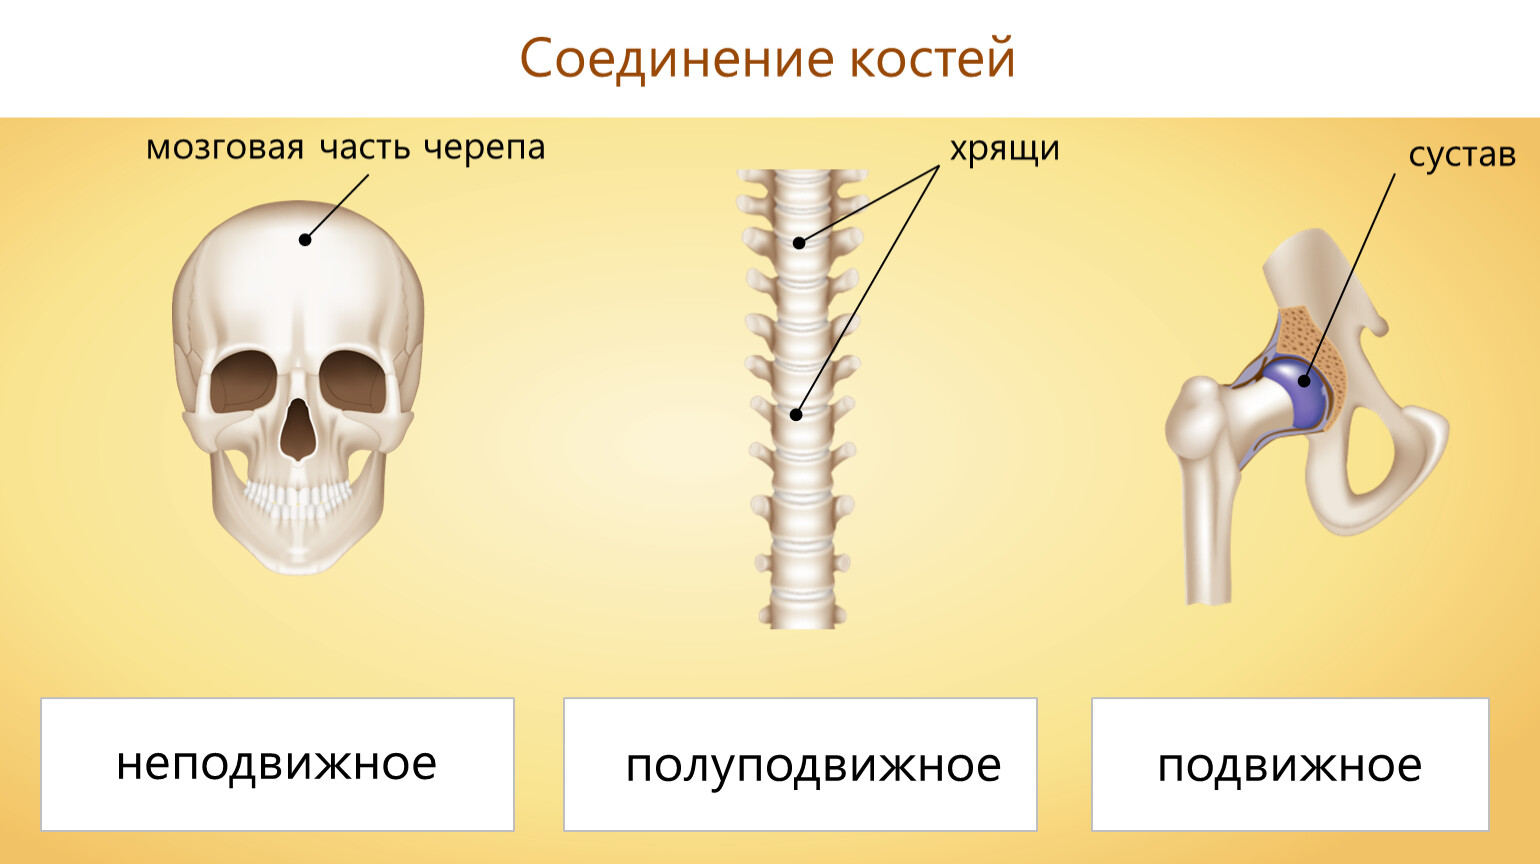 Сустав 2 соединение костей. Типы соединения костей неподвижное и полуподвижное. Подвижные соединения костей скелета. Соединение костей неподвижные полуподвижные. Соединения костей подвижные и неподвижные полуподвижные таблица.